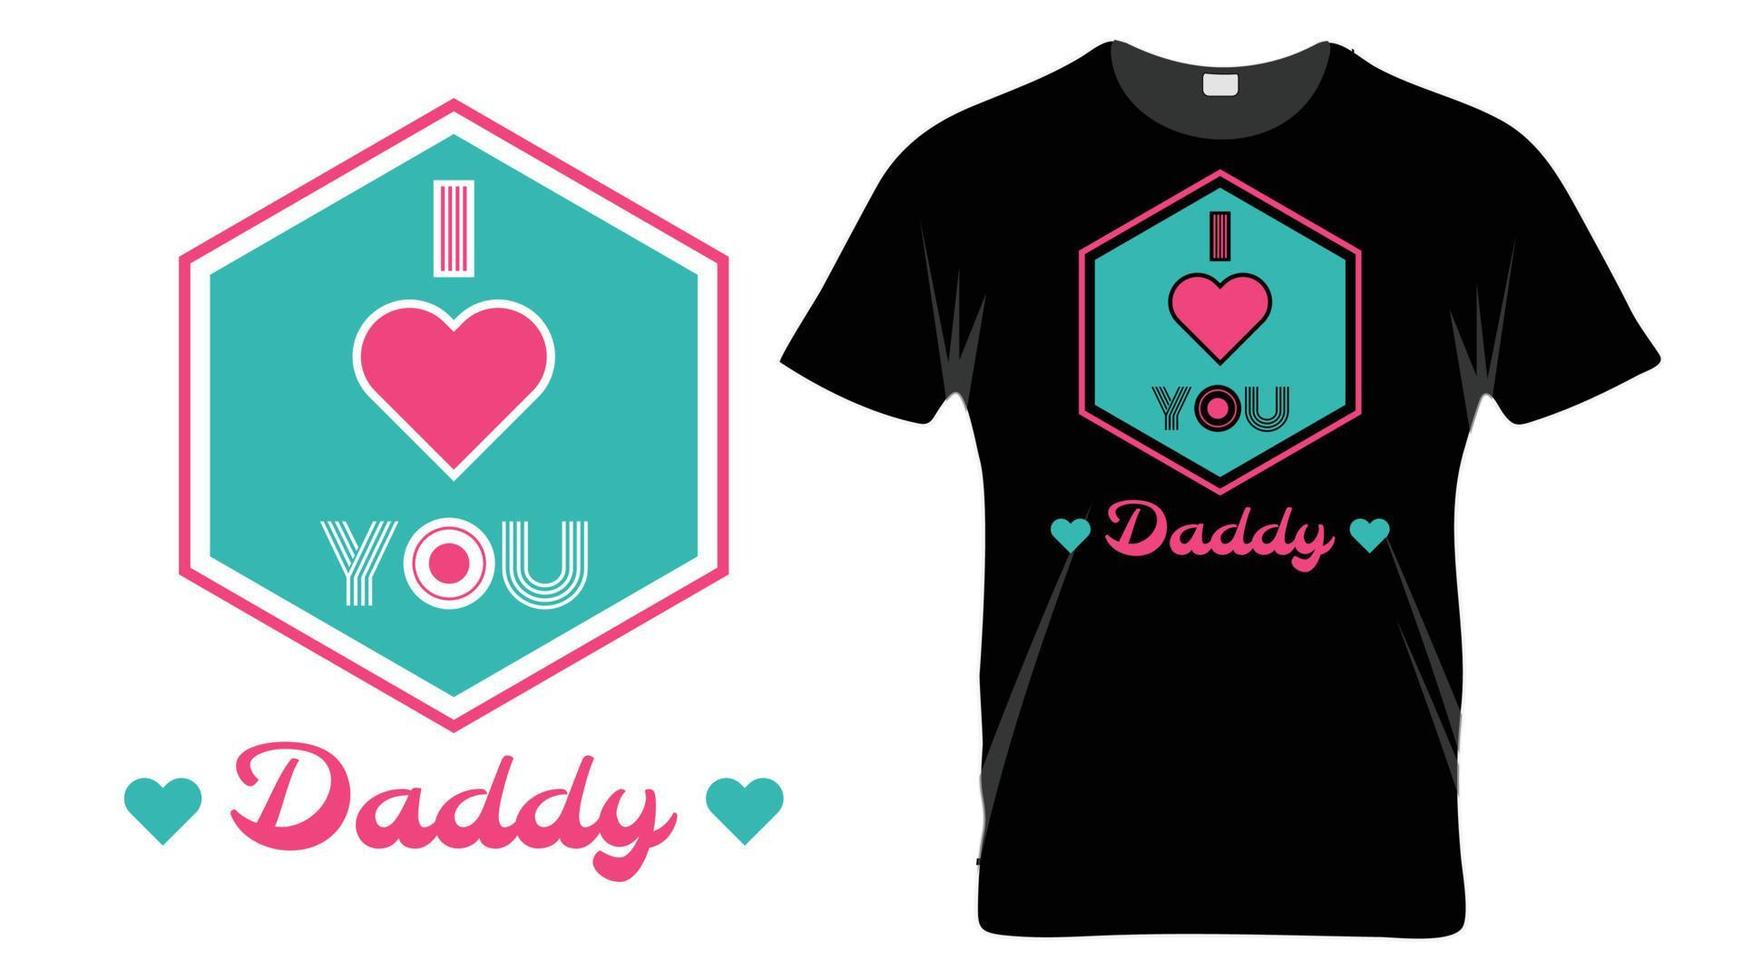 eu te amo papai - modelo de design de t-shirt de tipografia de dia dos pais vetor